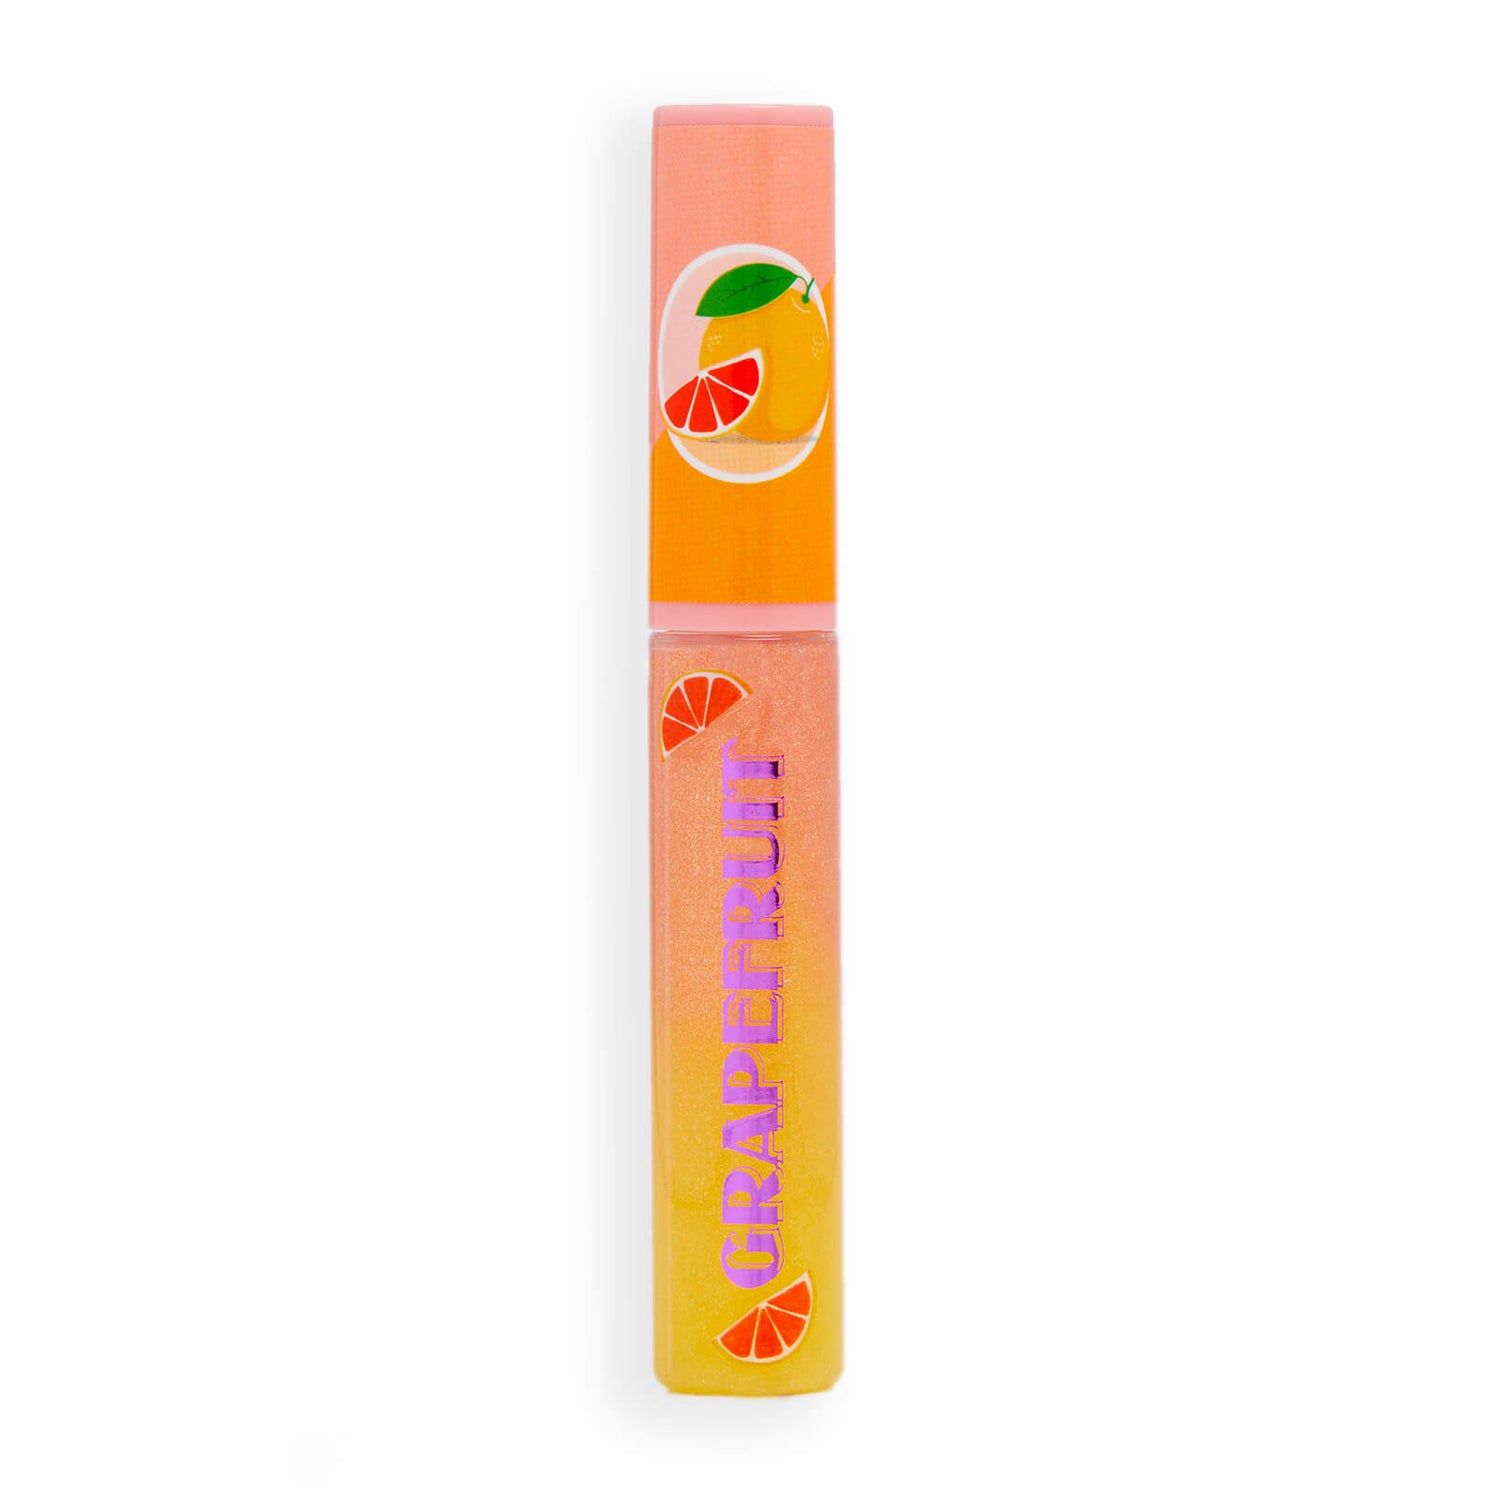 Revolution Beauty I Heart Revolution Shimmer Spritz Lip Gloss (Various Shades)